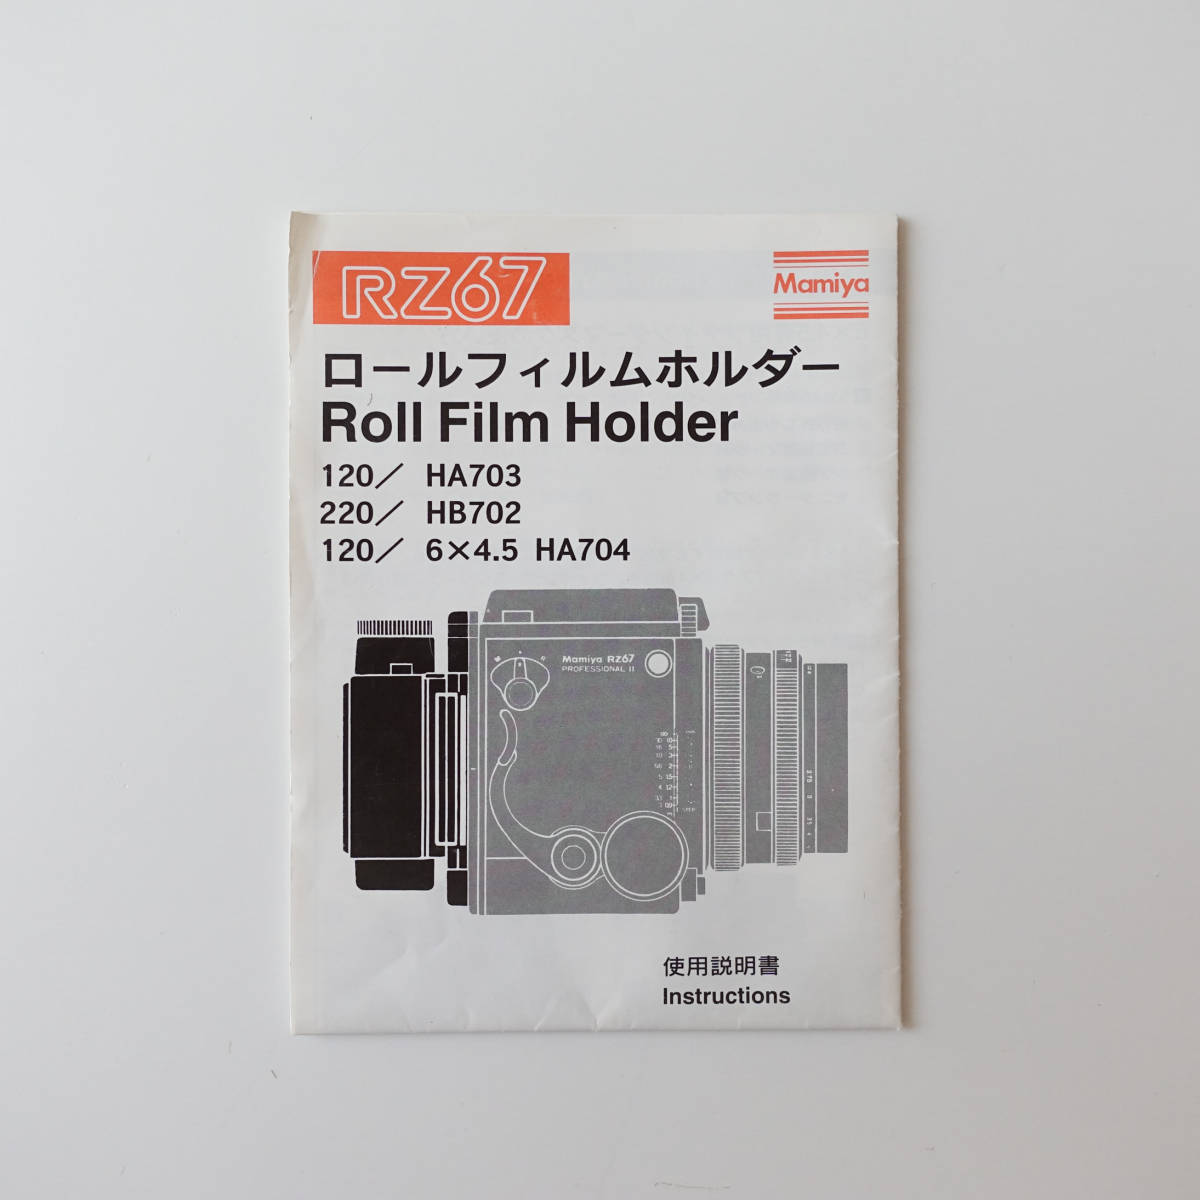 Mamiya Mamiya RZ67 roll плёнка держатель Roll Film Holder использование инструкция + письменная гарантия / 120 HA703 / 220 HB702 / английский язык японский язык город . тканый .